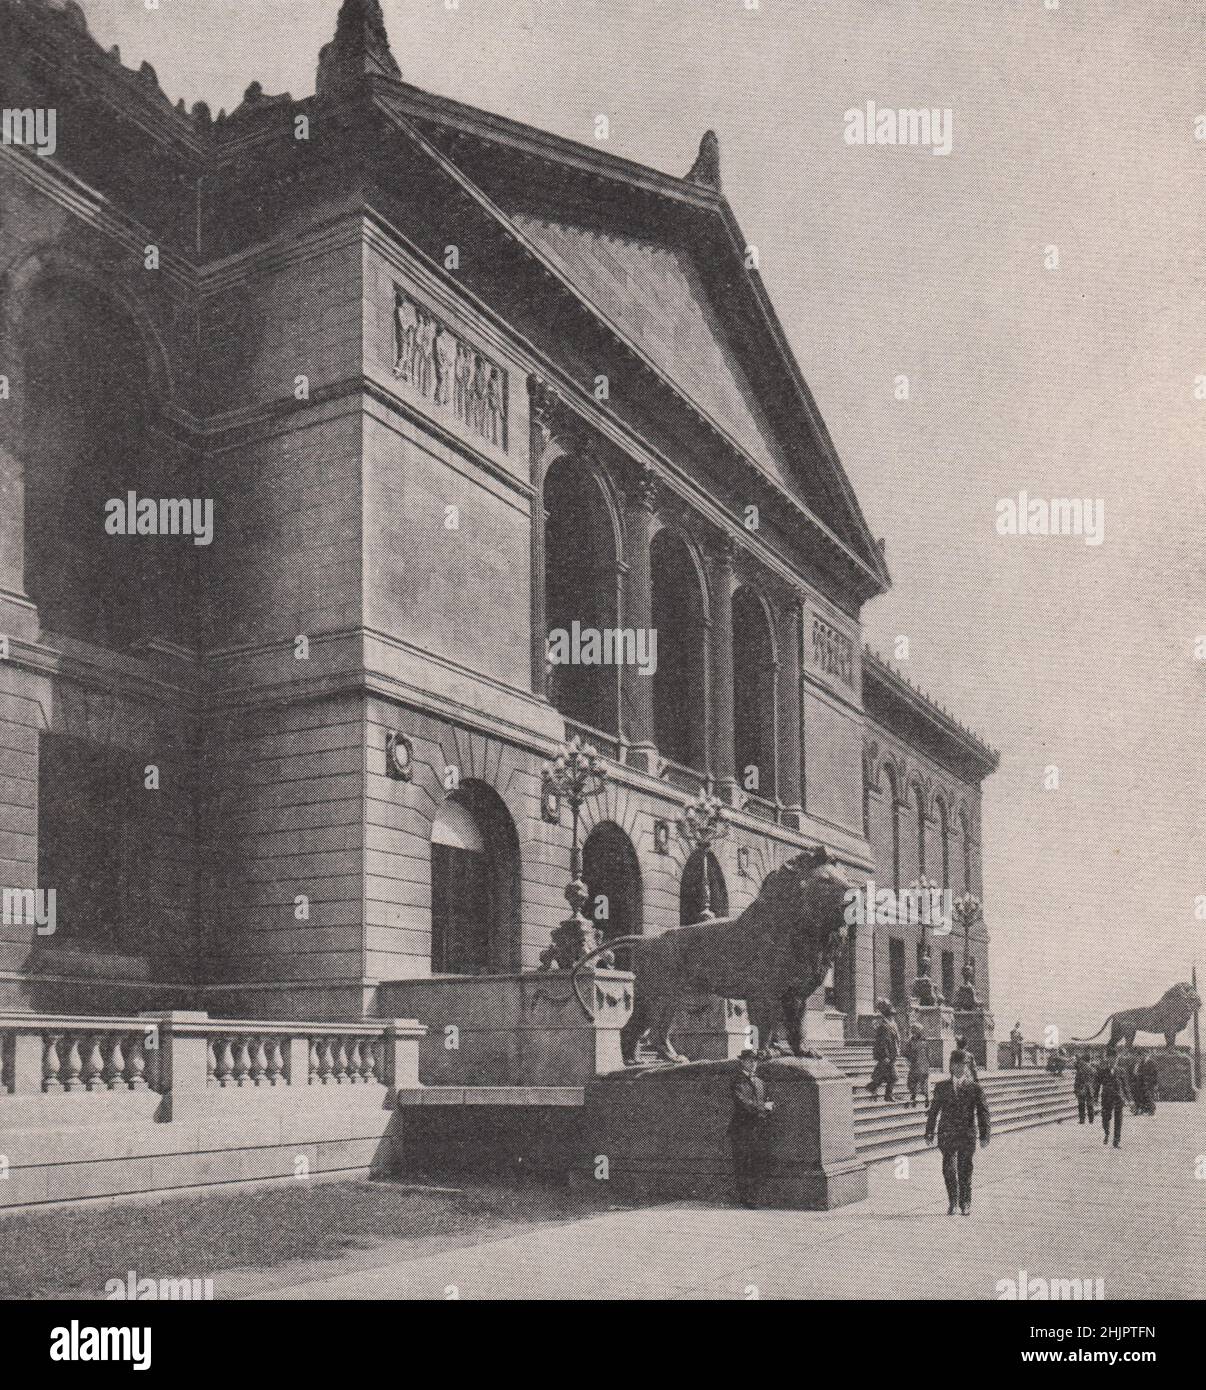 Frontage fiancheggiato da leoni dell'istituto d'arte di Chicago. Illinois (1923) Foto Stock